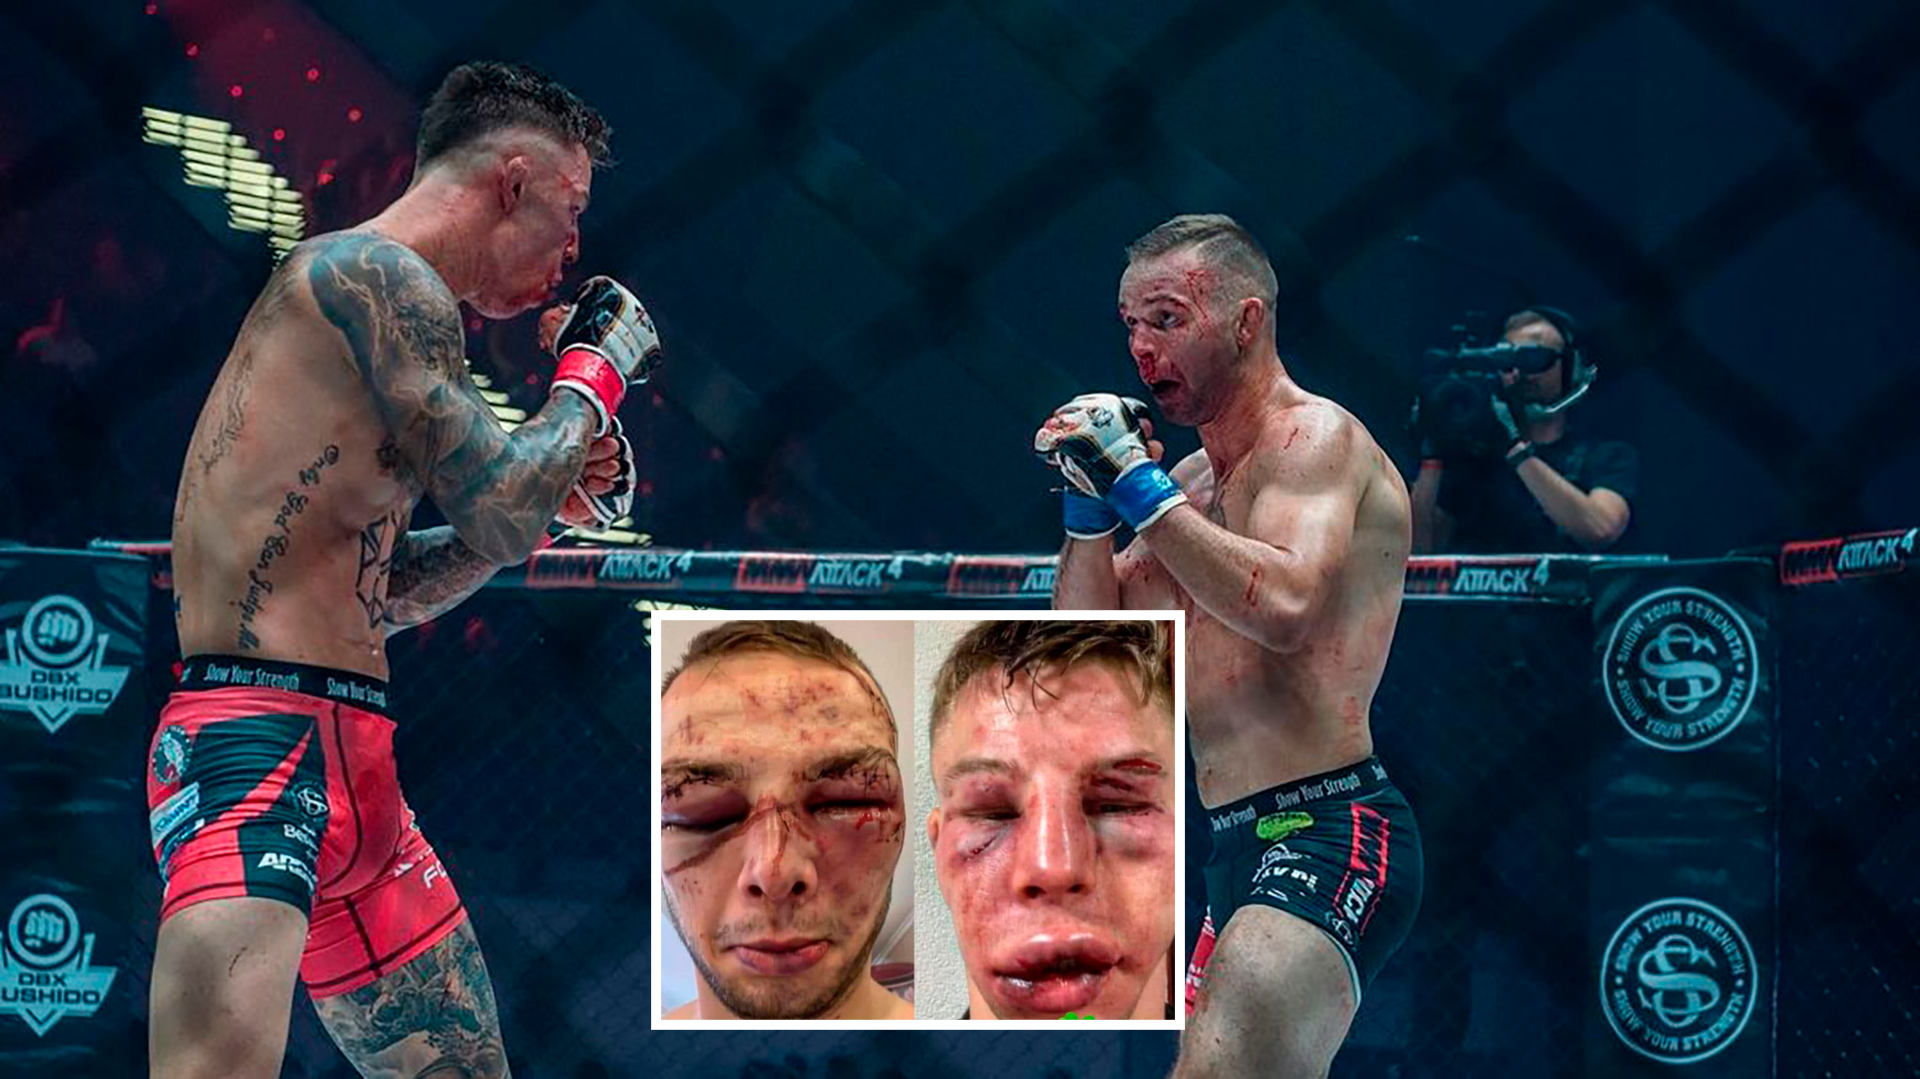 Así quedó el rostro de dos luchadores de MMA tras protagonizar “la pelea más sangrienta de la historia”